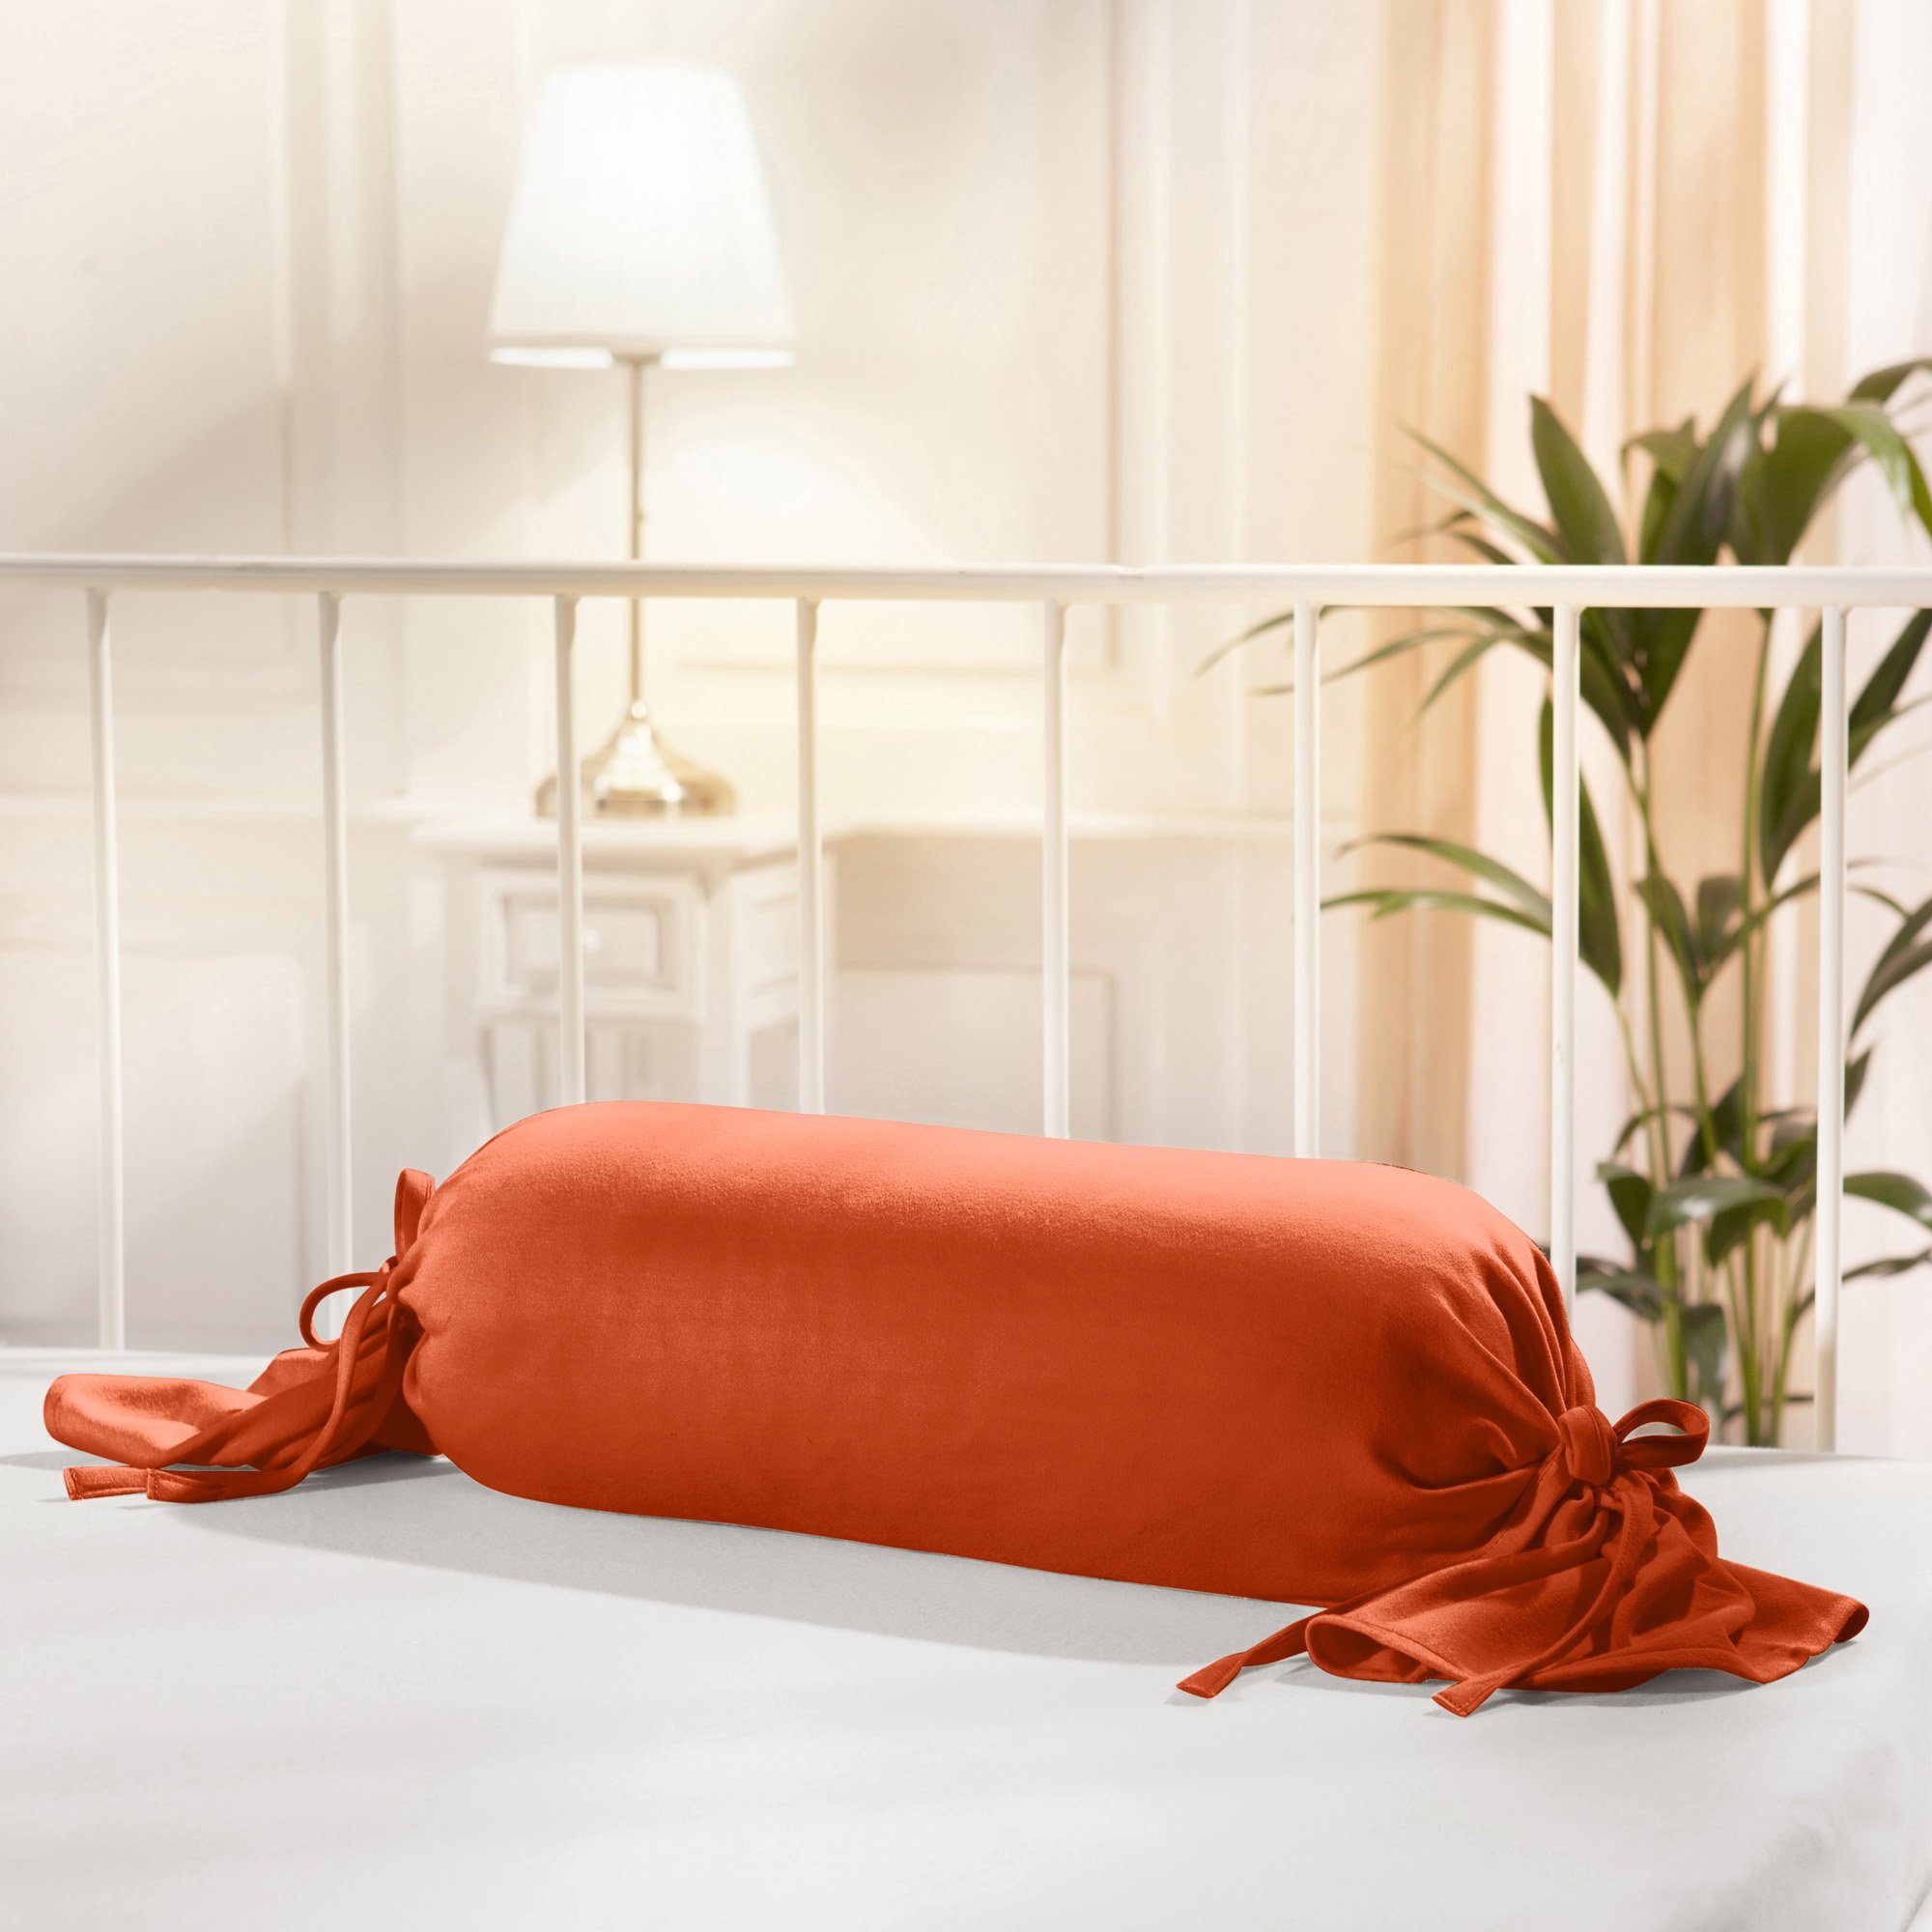 Traumschlaf Premium Interlock Jersey Universal Bezug für Nackenstützkissen  günstig online kaufen bei Bettwaren Shop